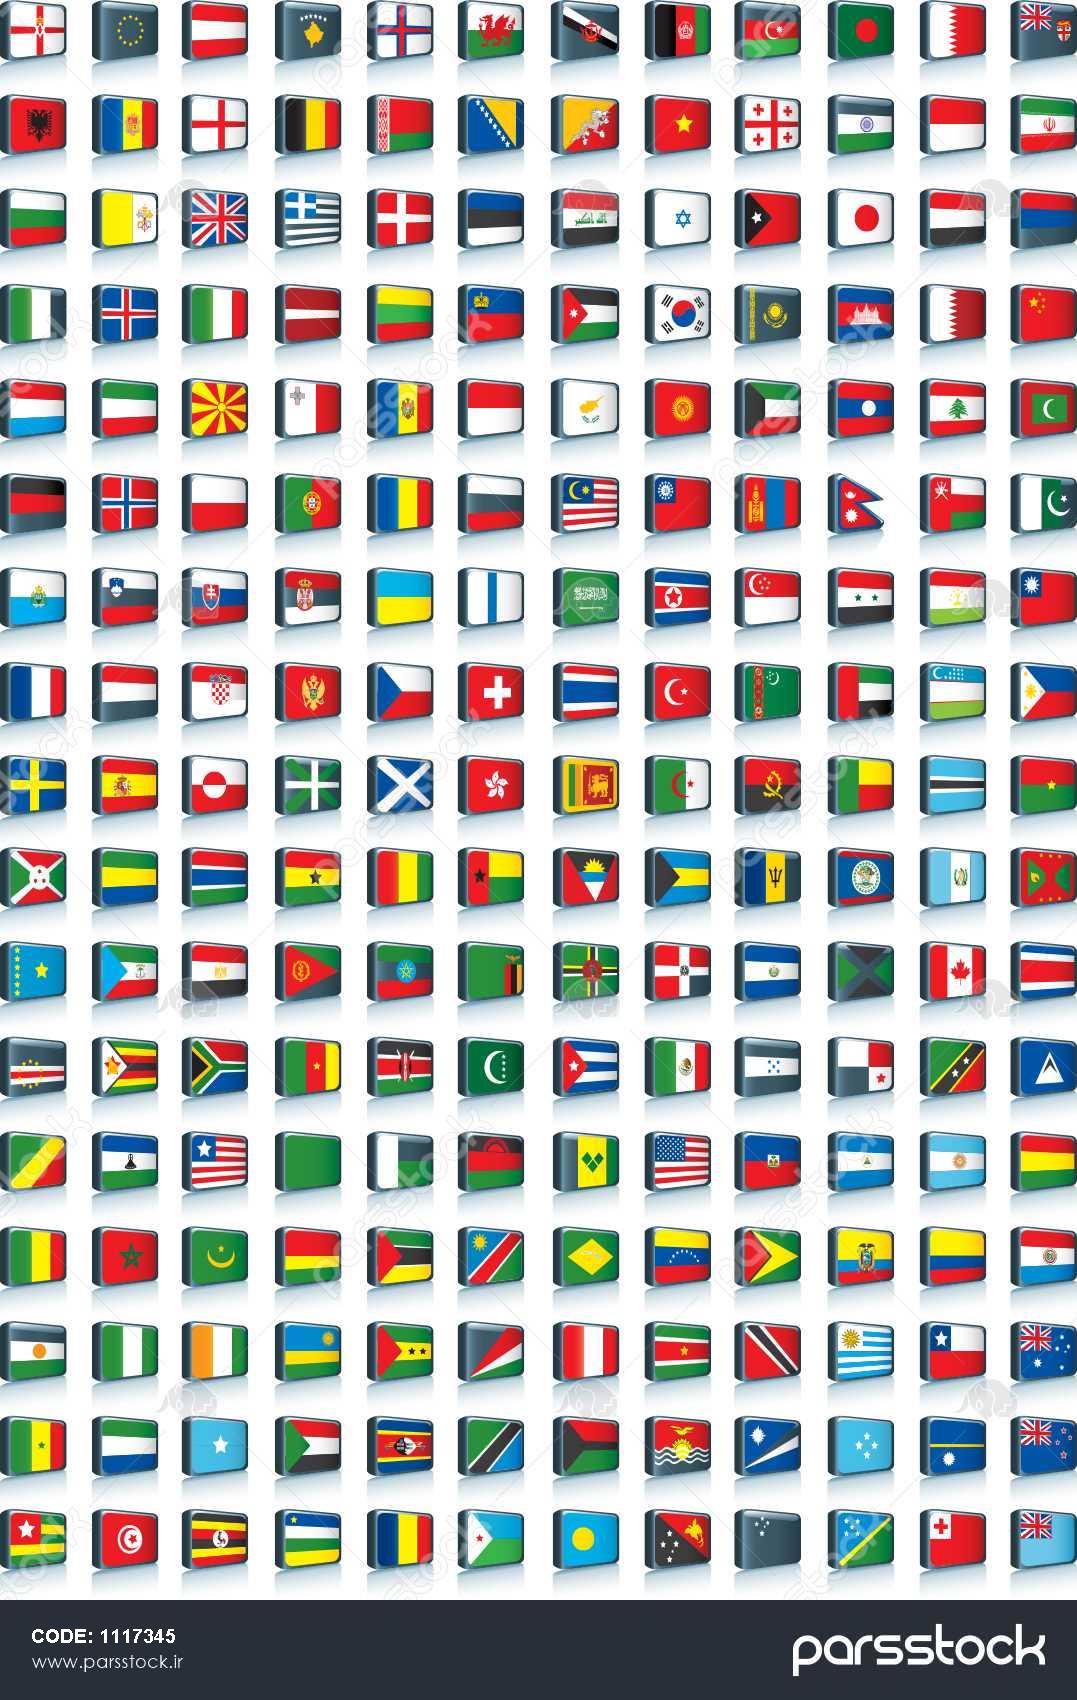 دانلود عکس پرچم های کشورهای جهان